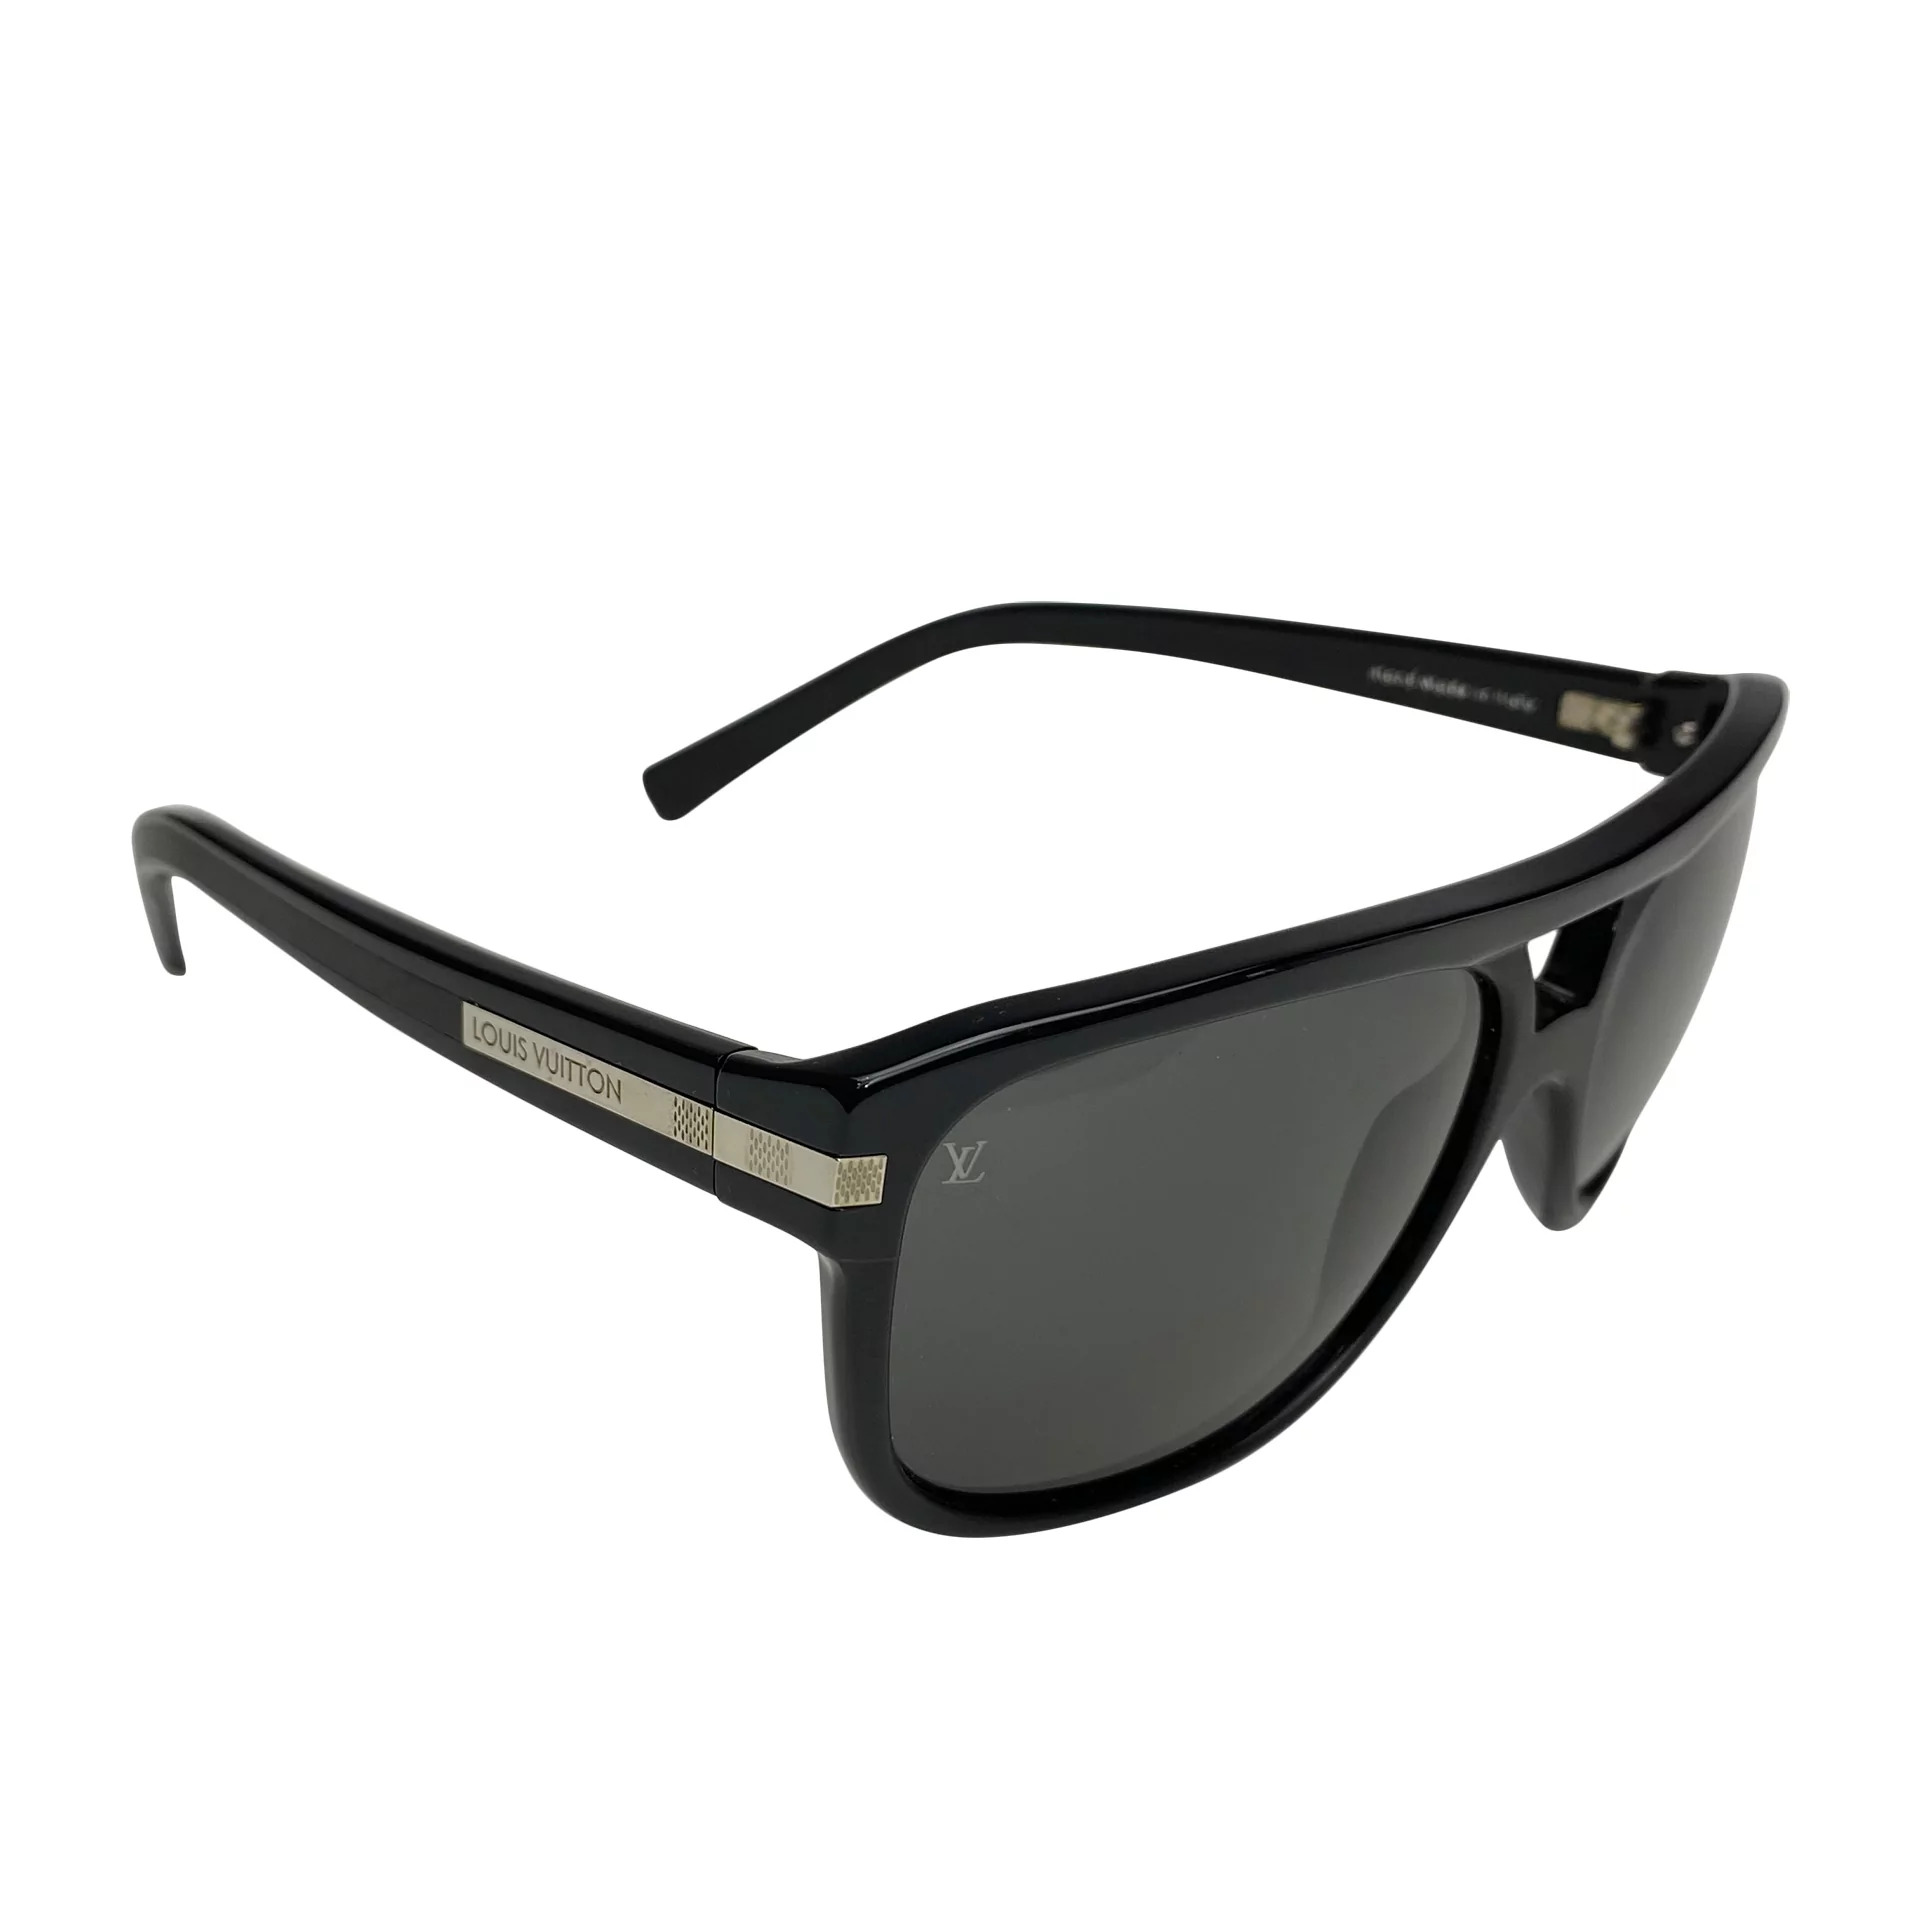 Preços baixos em Óculos de Sol Masculino Louis Vuitton Preto para